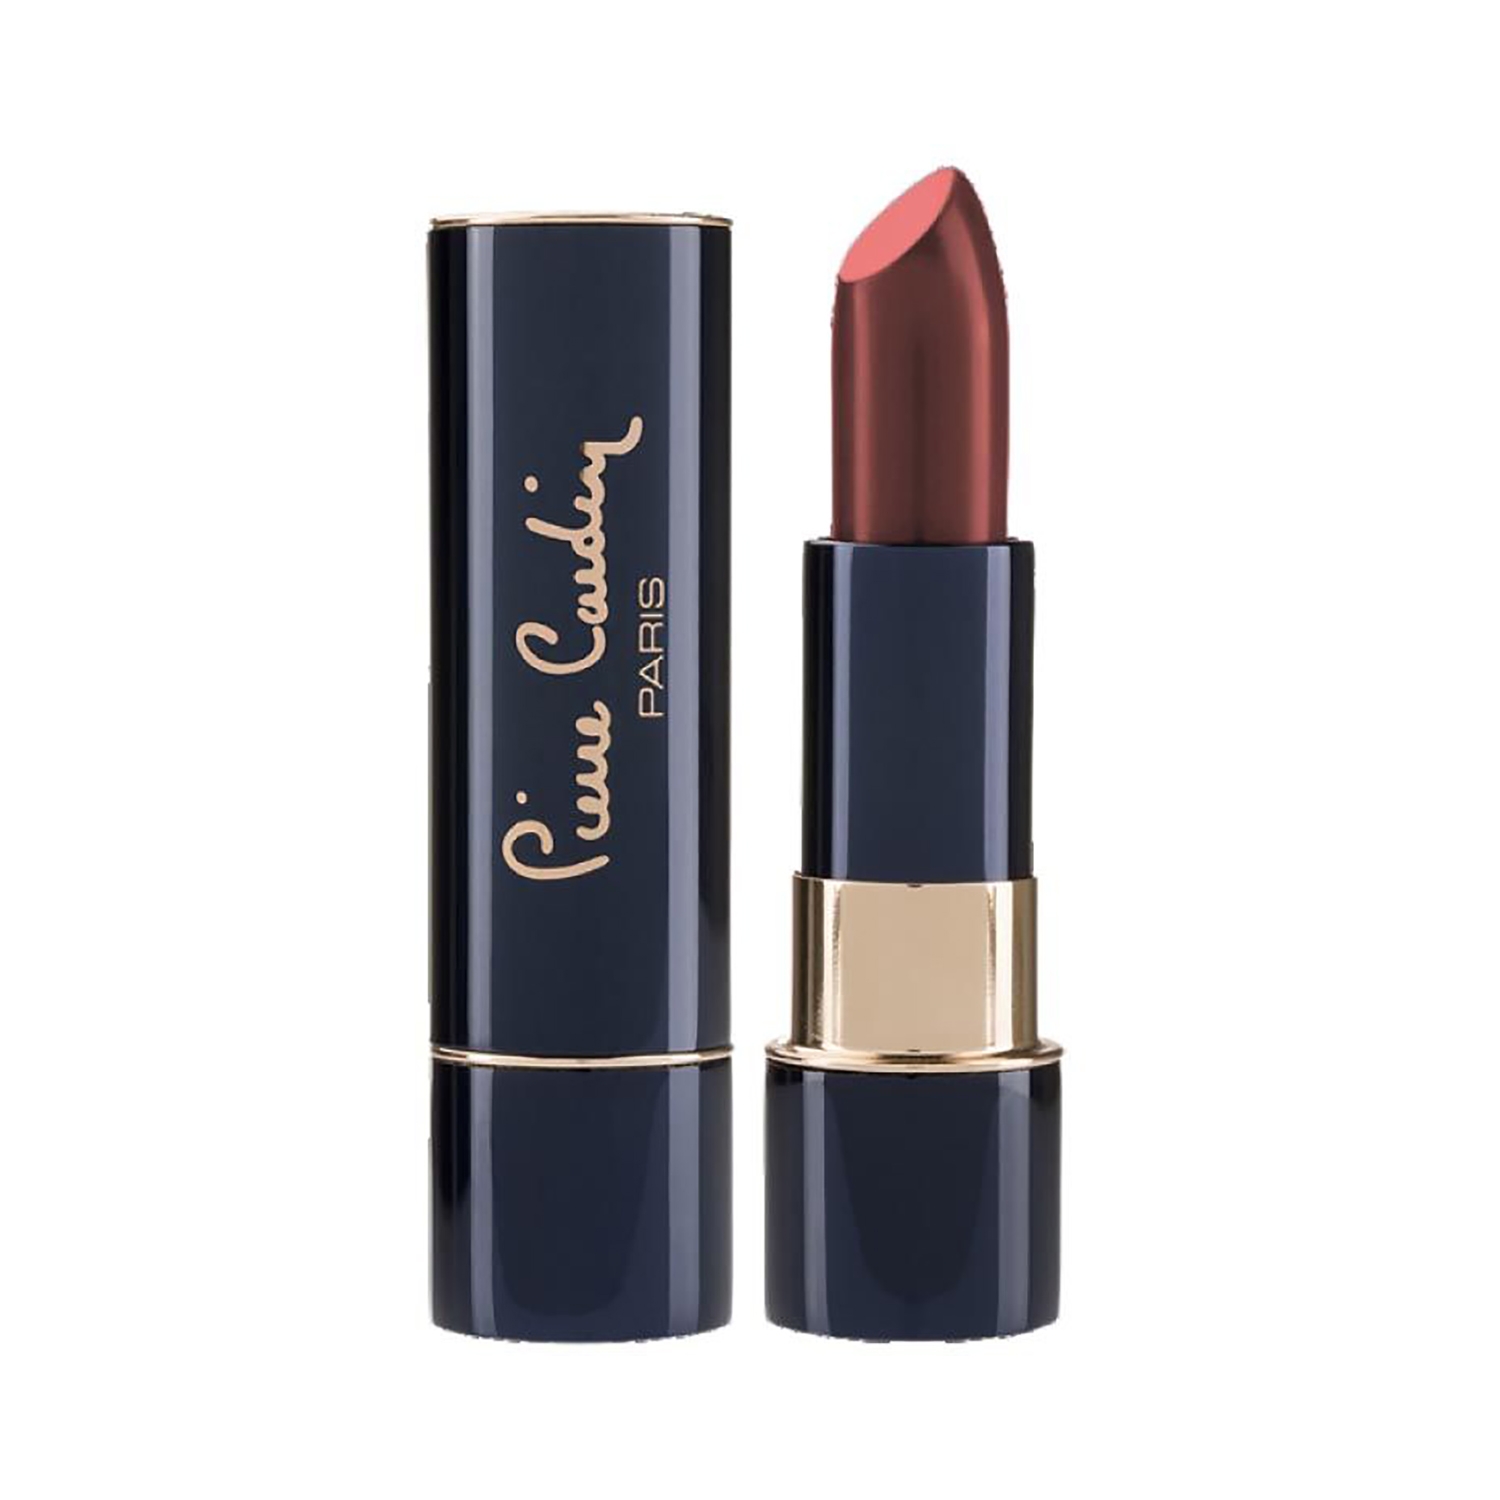 Pierre Cardin Paris | Pierre Cardin Paris Matte Rouge Lipstick - 445 Charming Peach (4.3g)